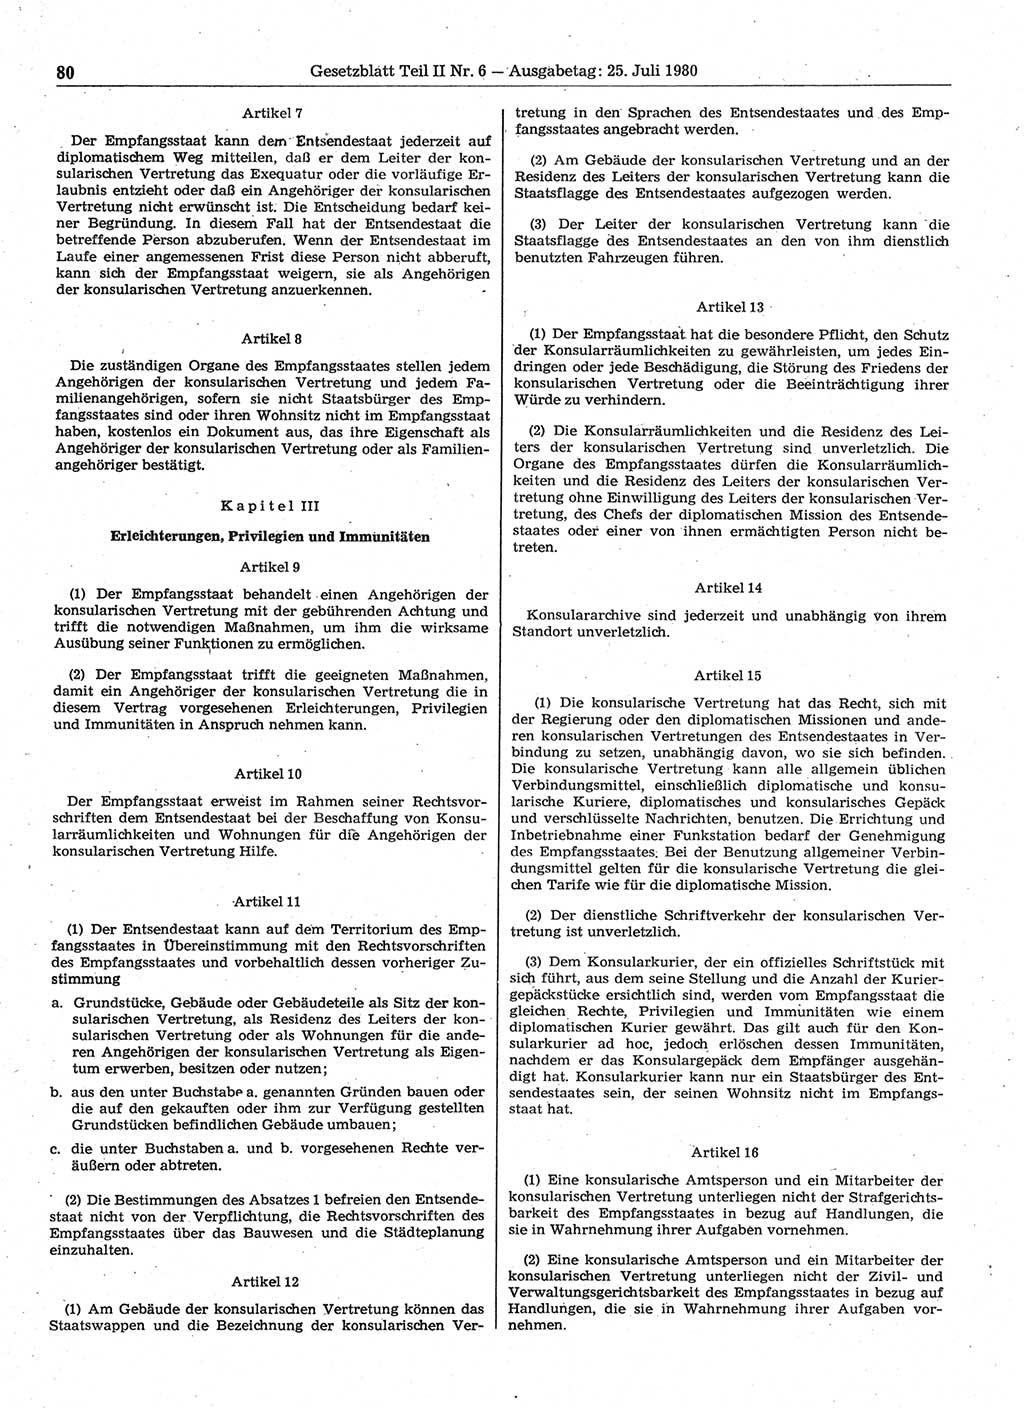 Gesetzblatt (GBl.) der Deutschen Demokratischen Republik (DDR) Teil ⅠⅠ 1980, Seite 80 (GBl. DDR ⅠⅠ 1980, S. 80)